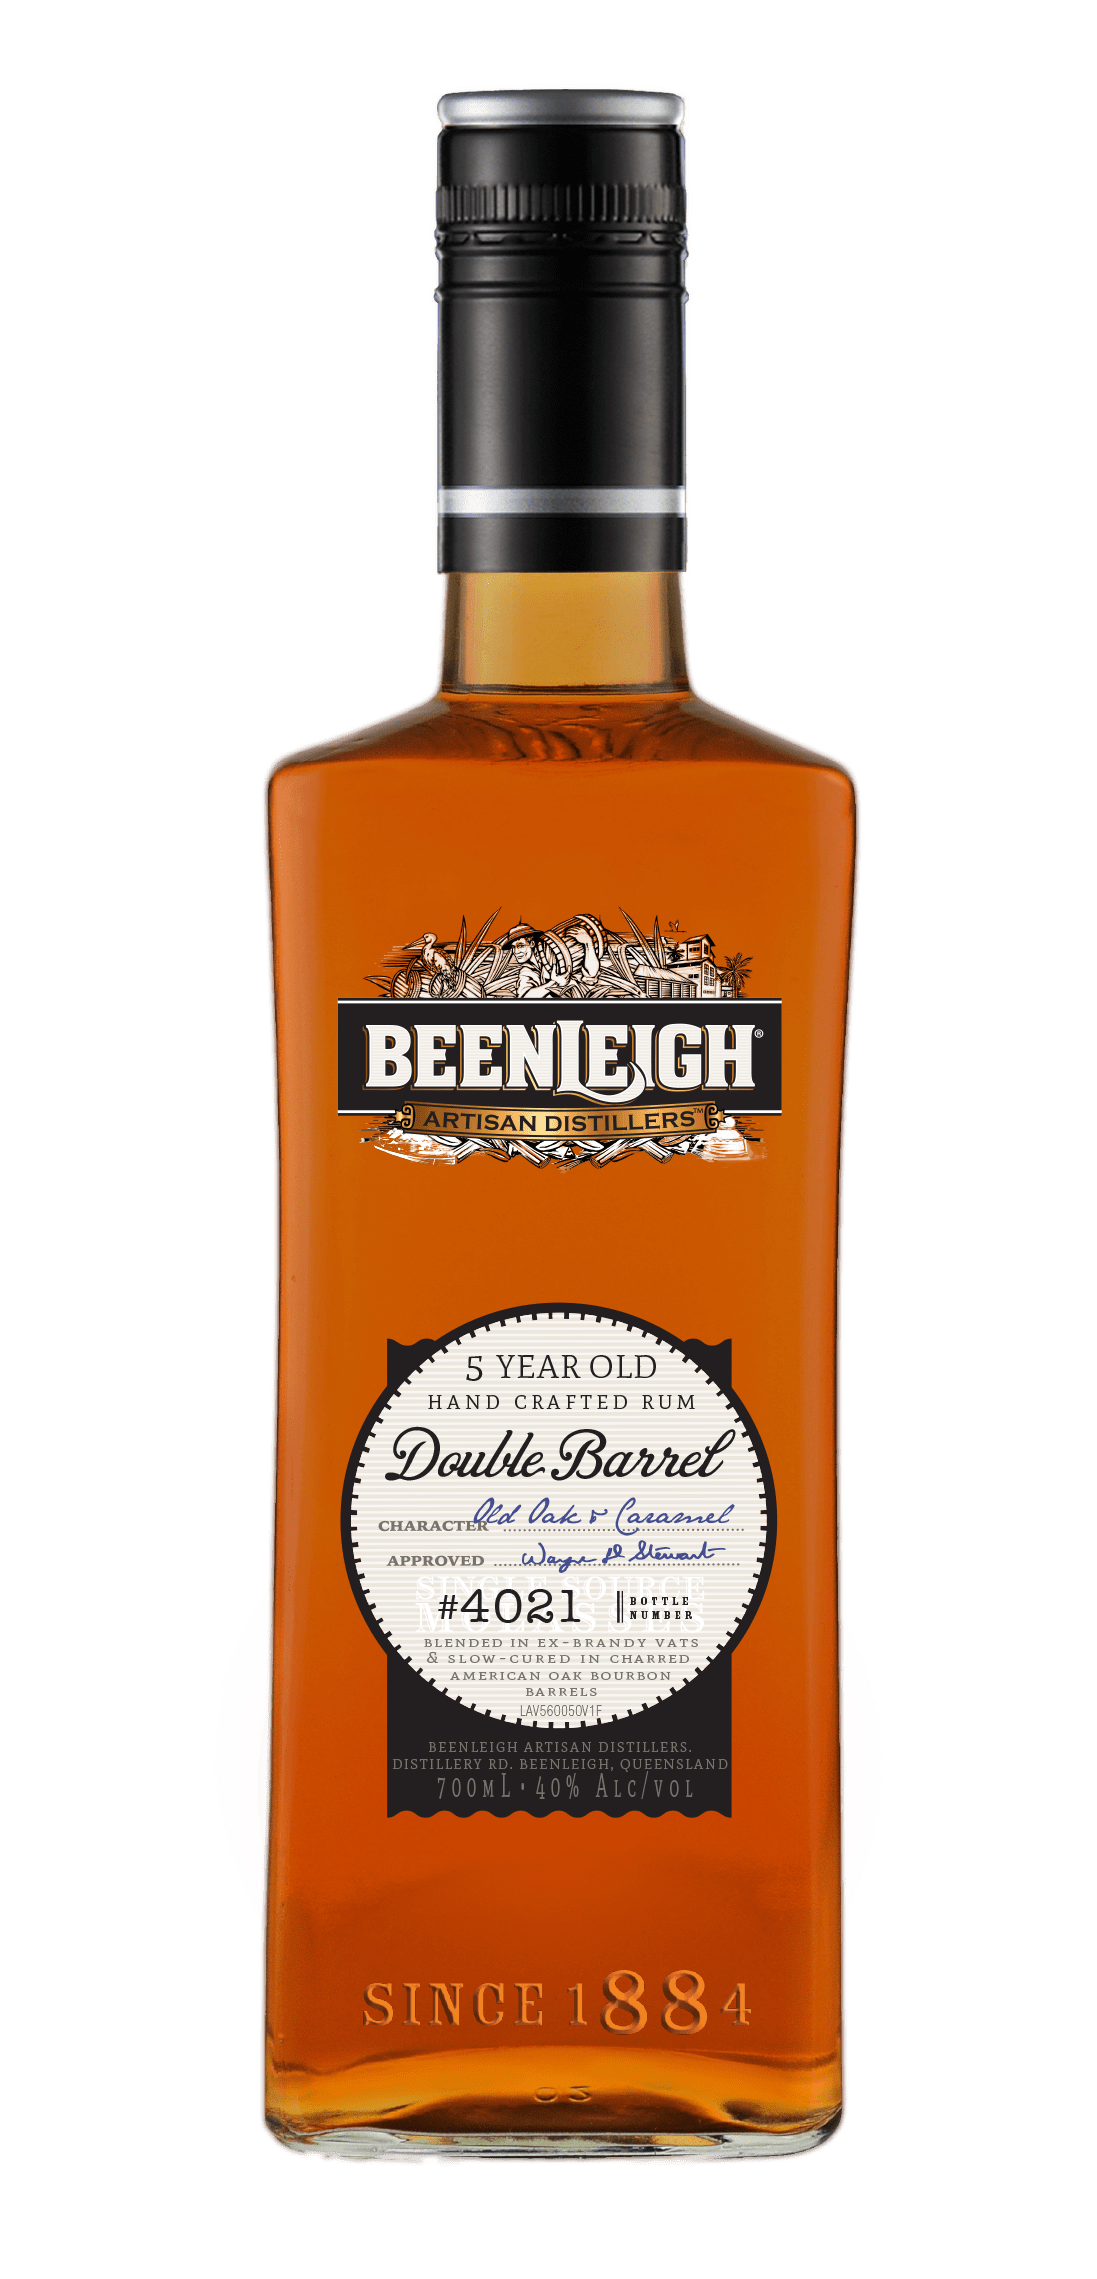 Beenleigh Rum